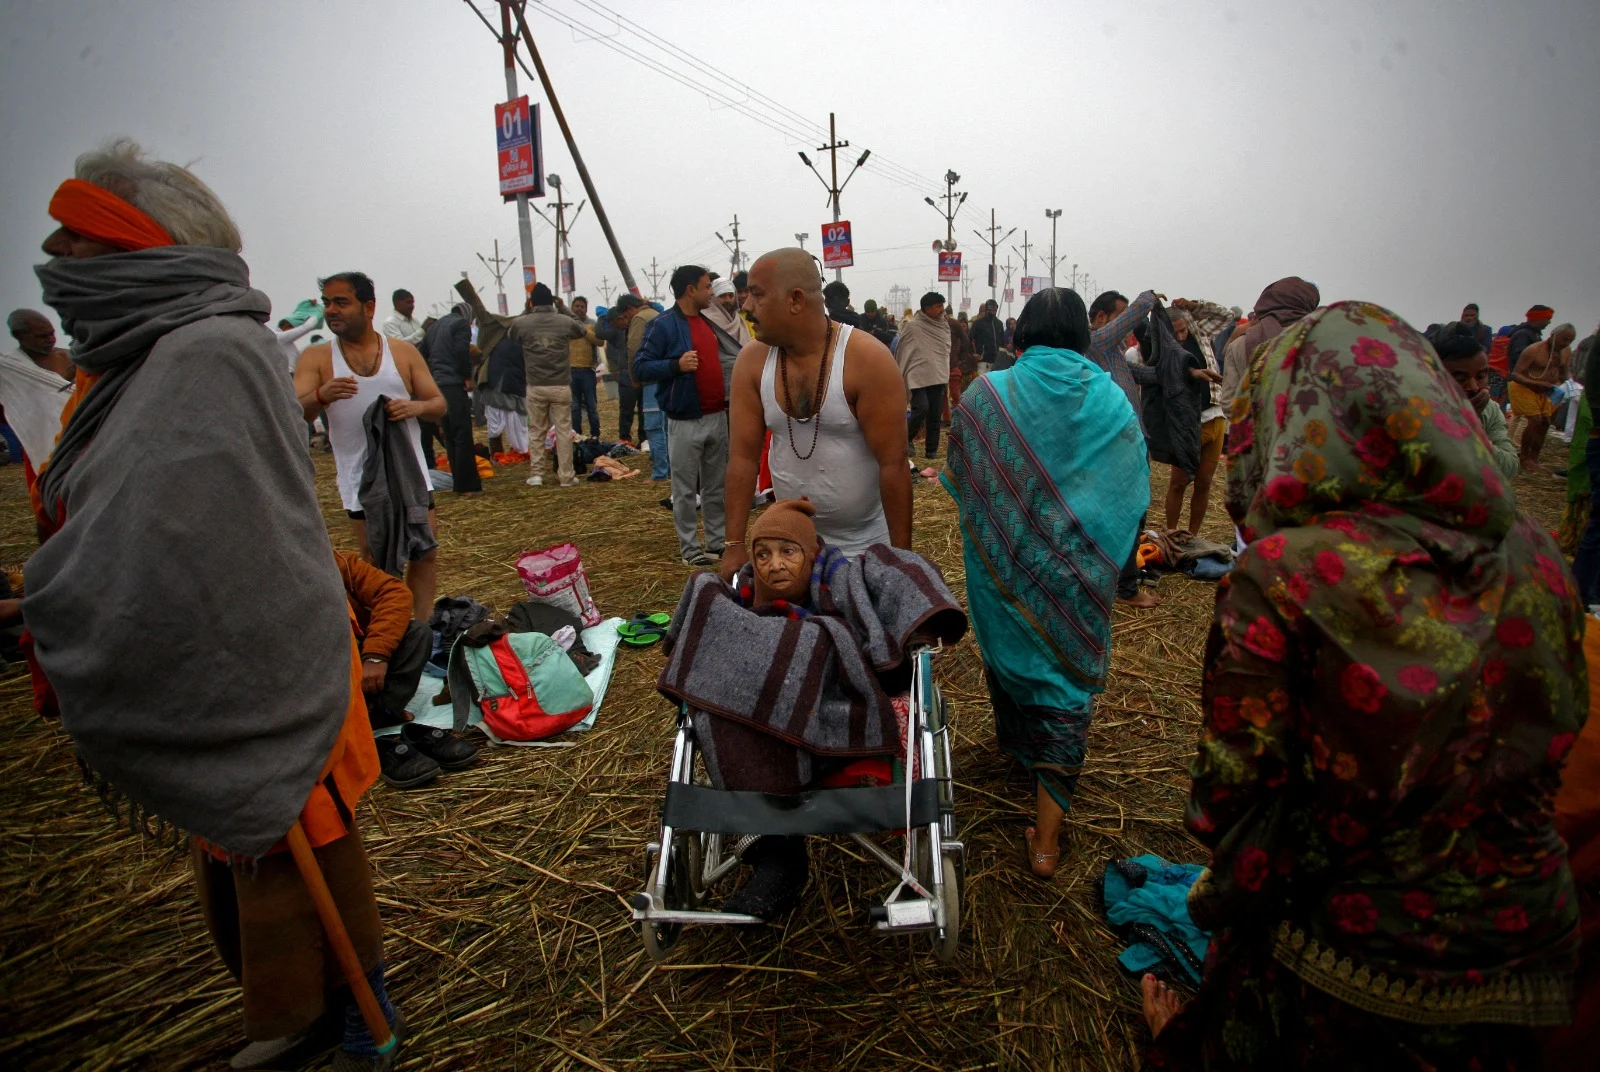 המוני הודים חוגגים בפסטיבל הקומבה-מלה באללהאבאד